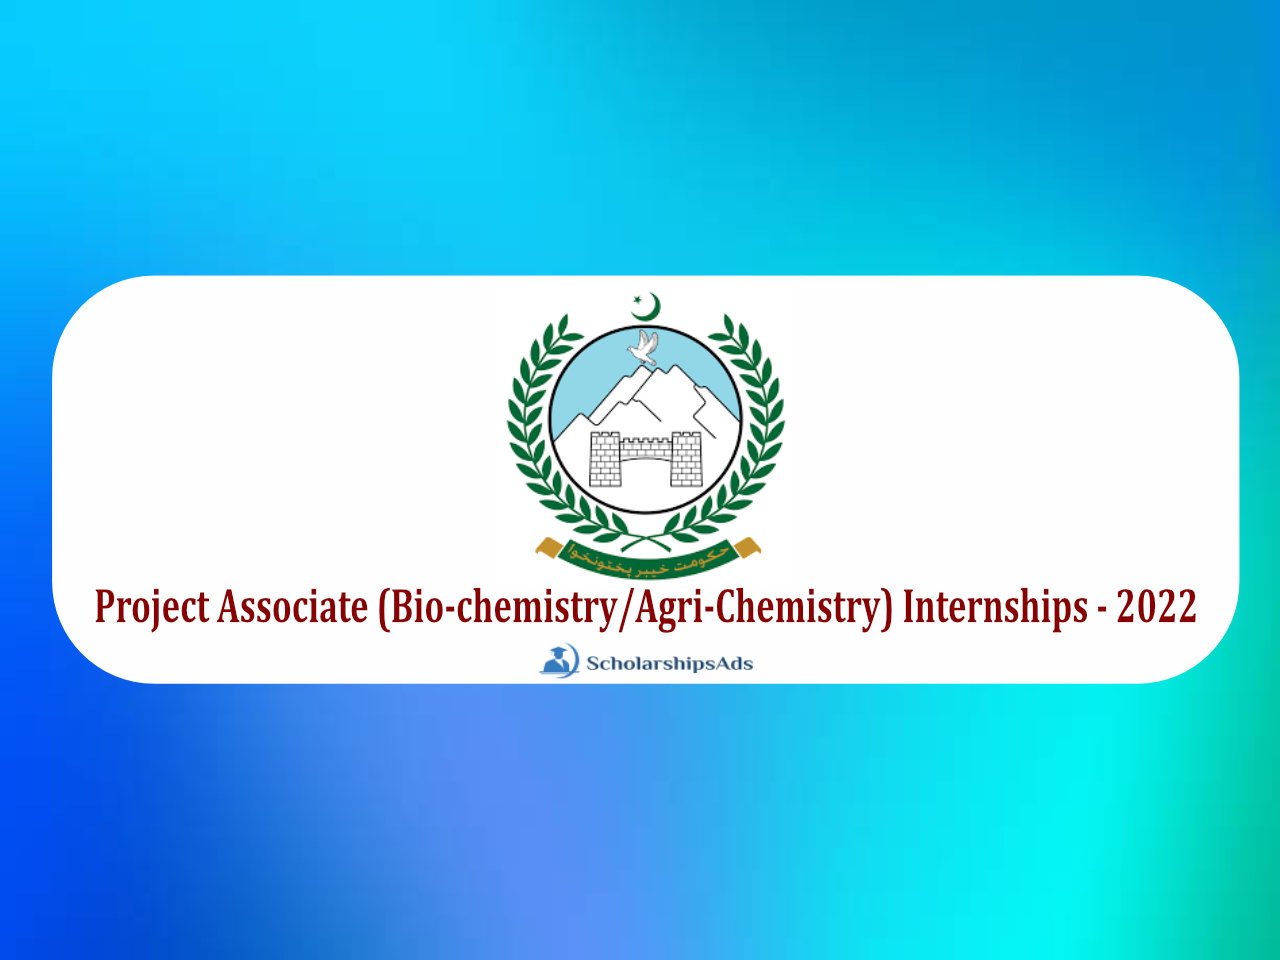 Project Associate (Biochemistry/AgriChemistry) Internships 2022